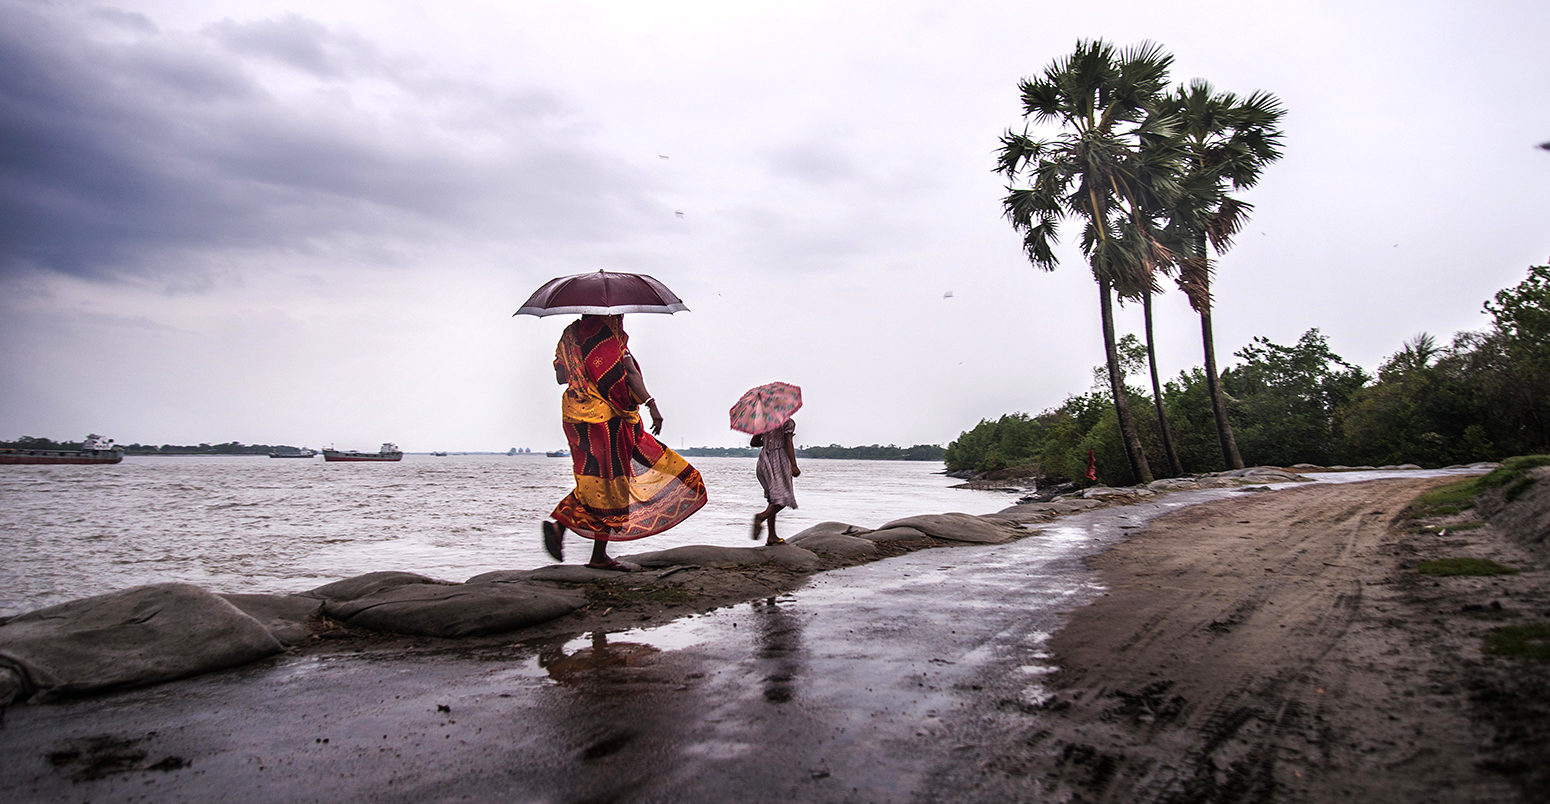 2019年5月飓风范尼战争怎样惊人地扩大,3。战争怎样惊人地扩大,孟加拉国。信贷:Nazrul伊斯兰教除股票的照片。T9BYFK